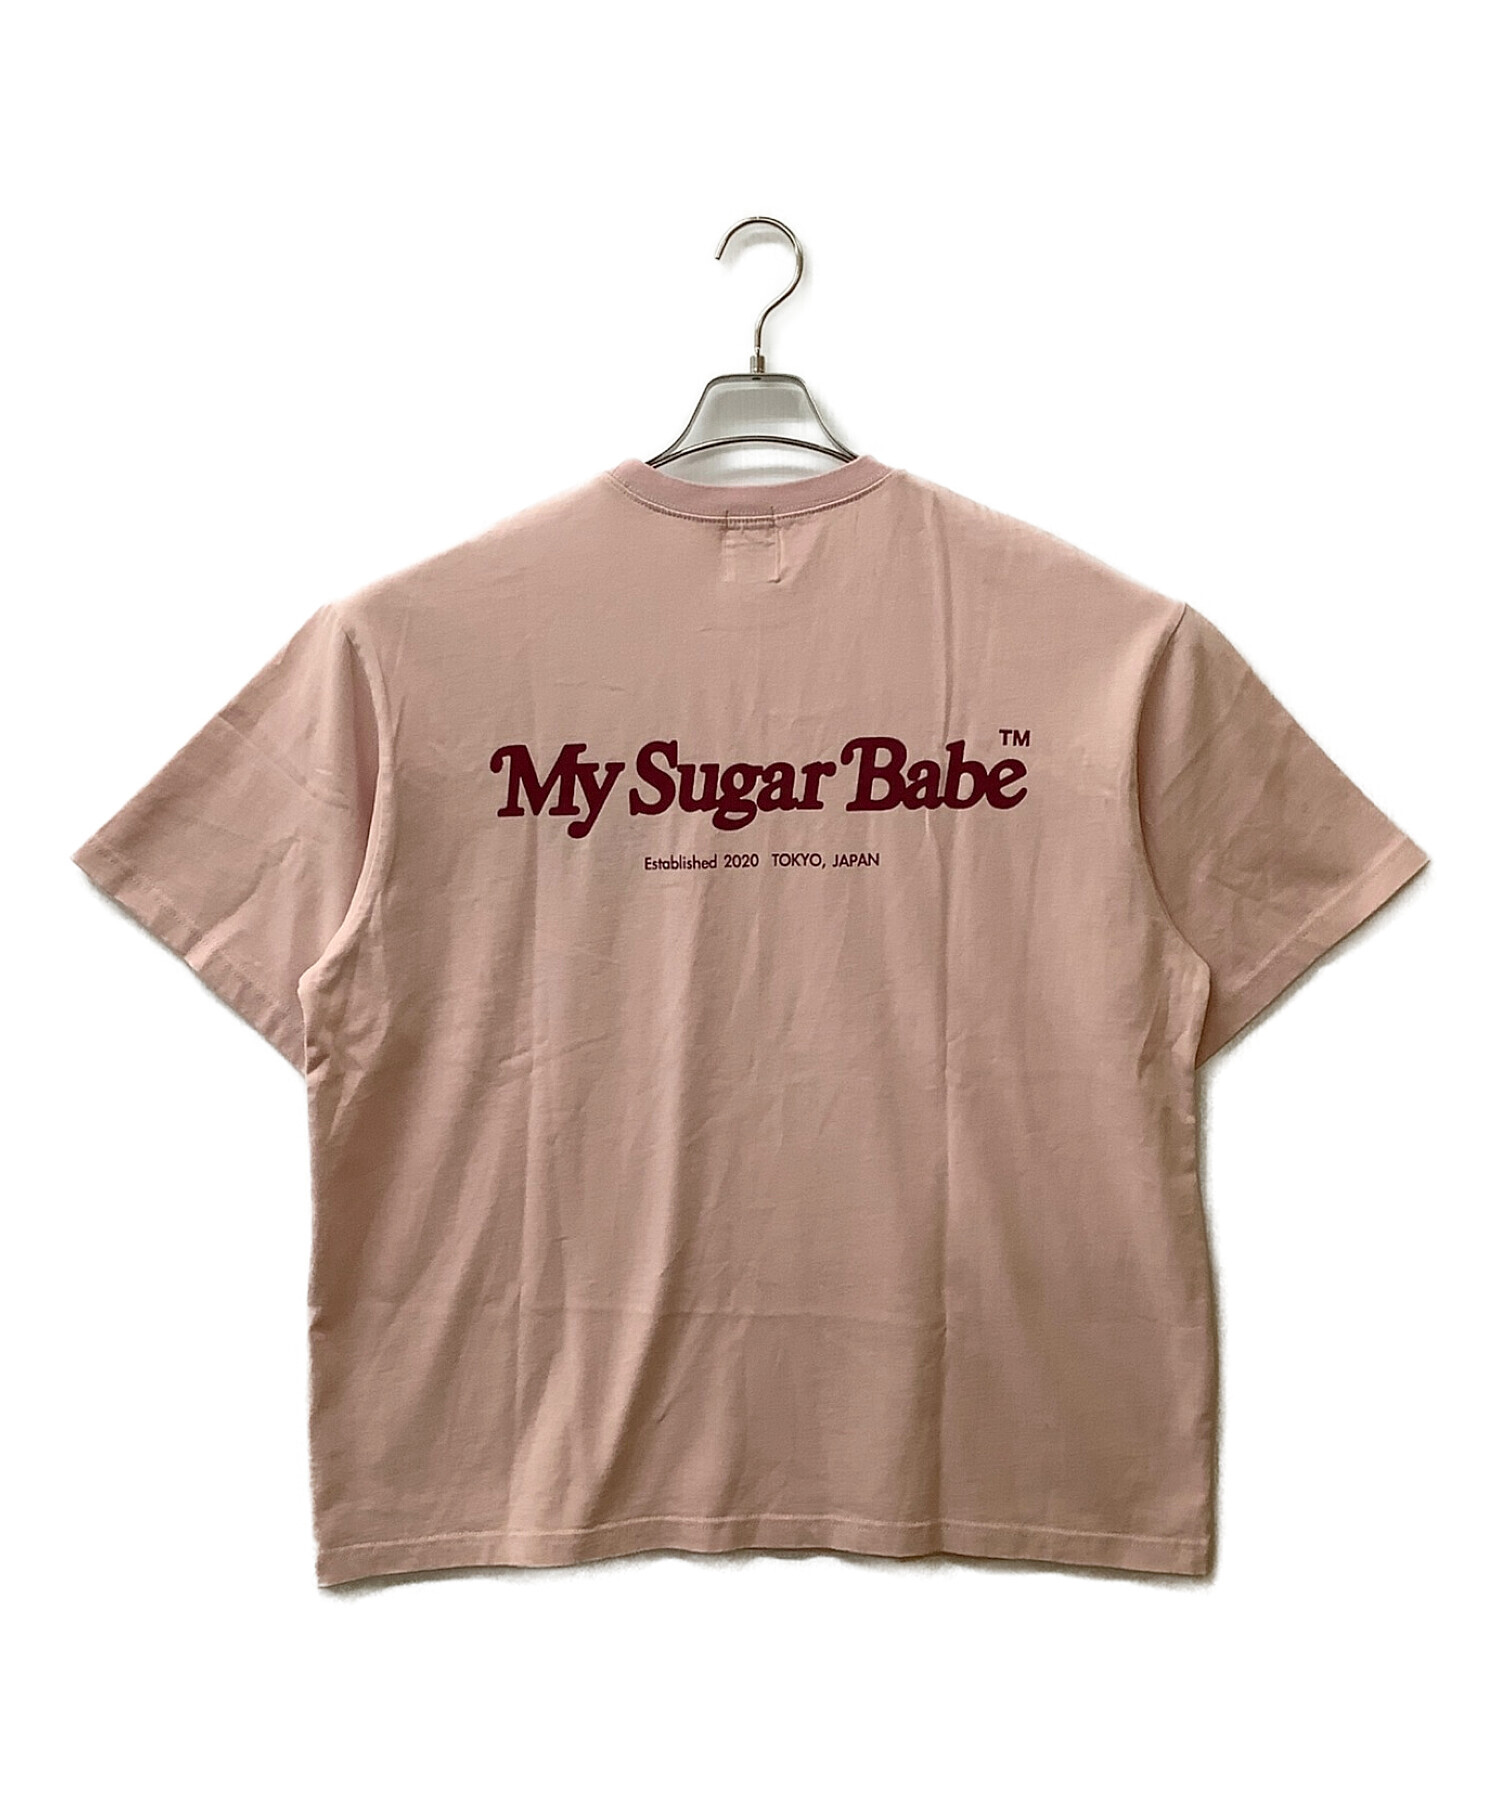 中古・古着通販】My Sugar Babe (マイシュガーベイブ) 刺繍ロゴTシャツ